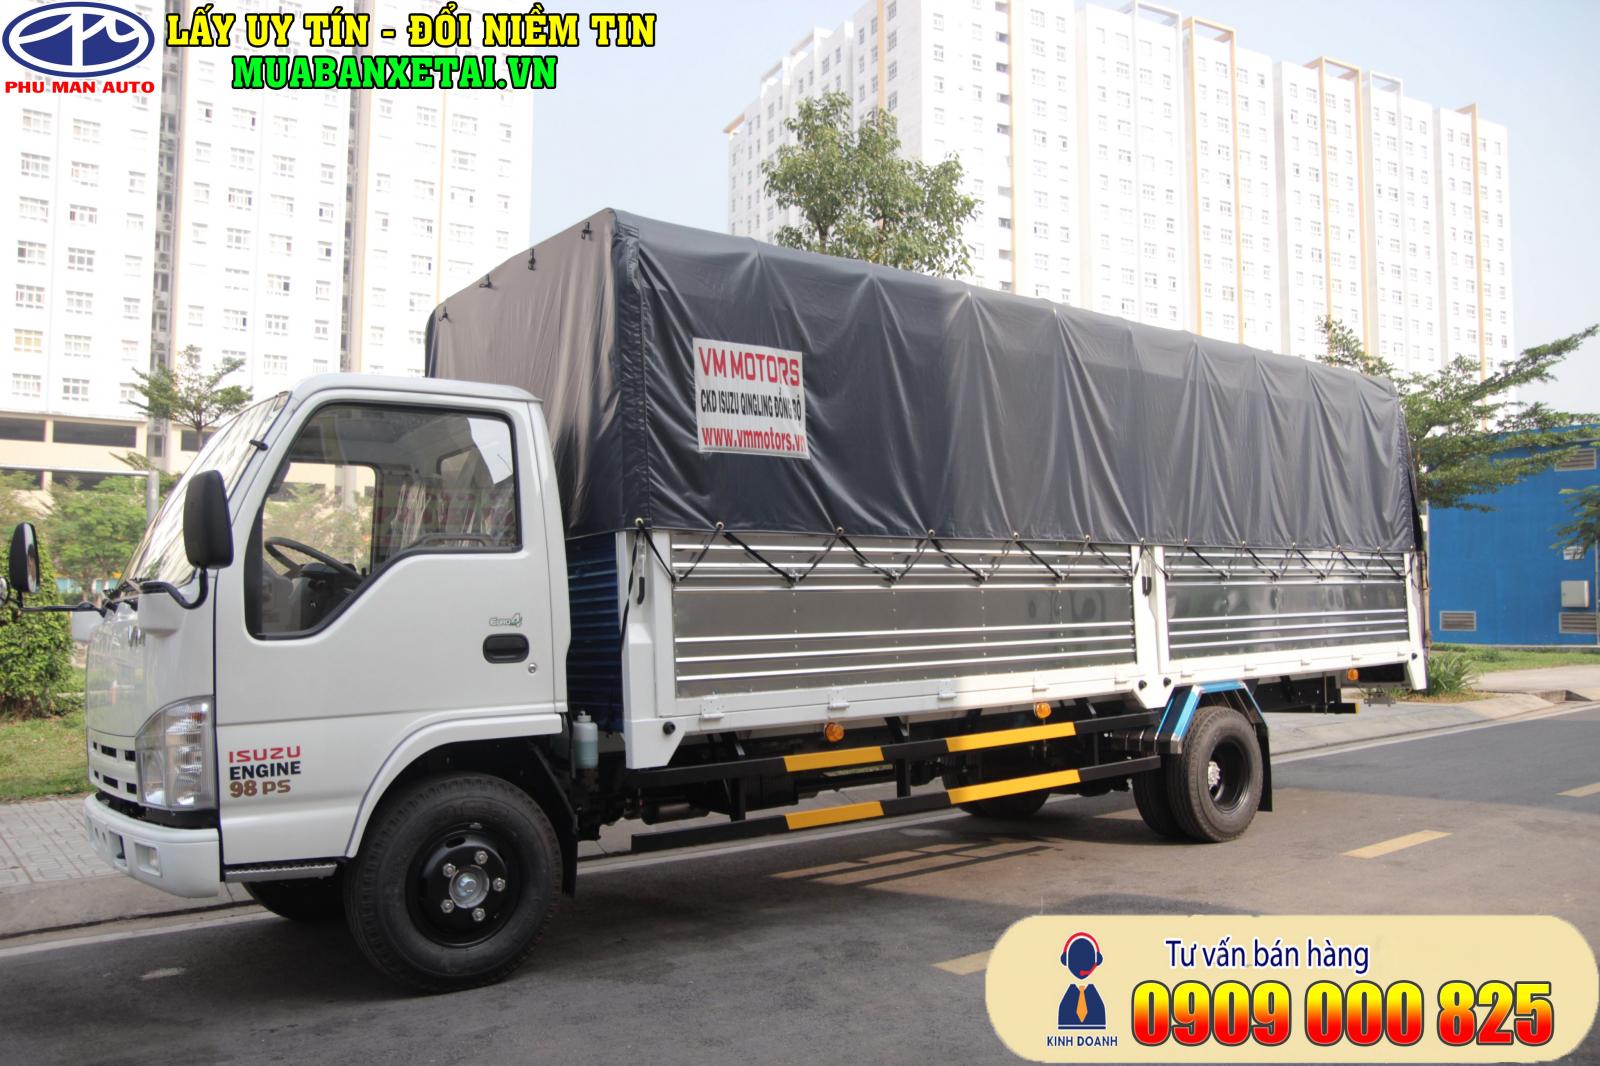 “Giá mới” xe tải Isuzu Vĩnh Phát 1.9 tấn, thùng dài 6.2 mét - 0909 000 825-4